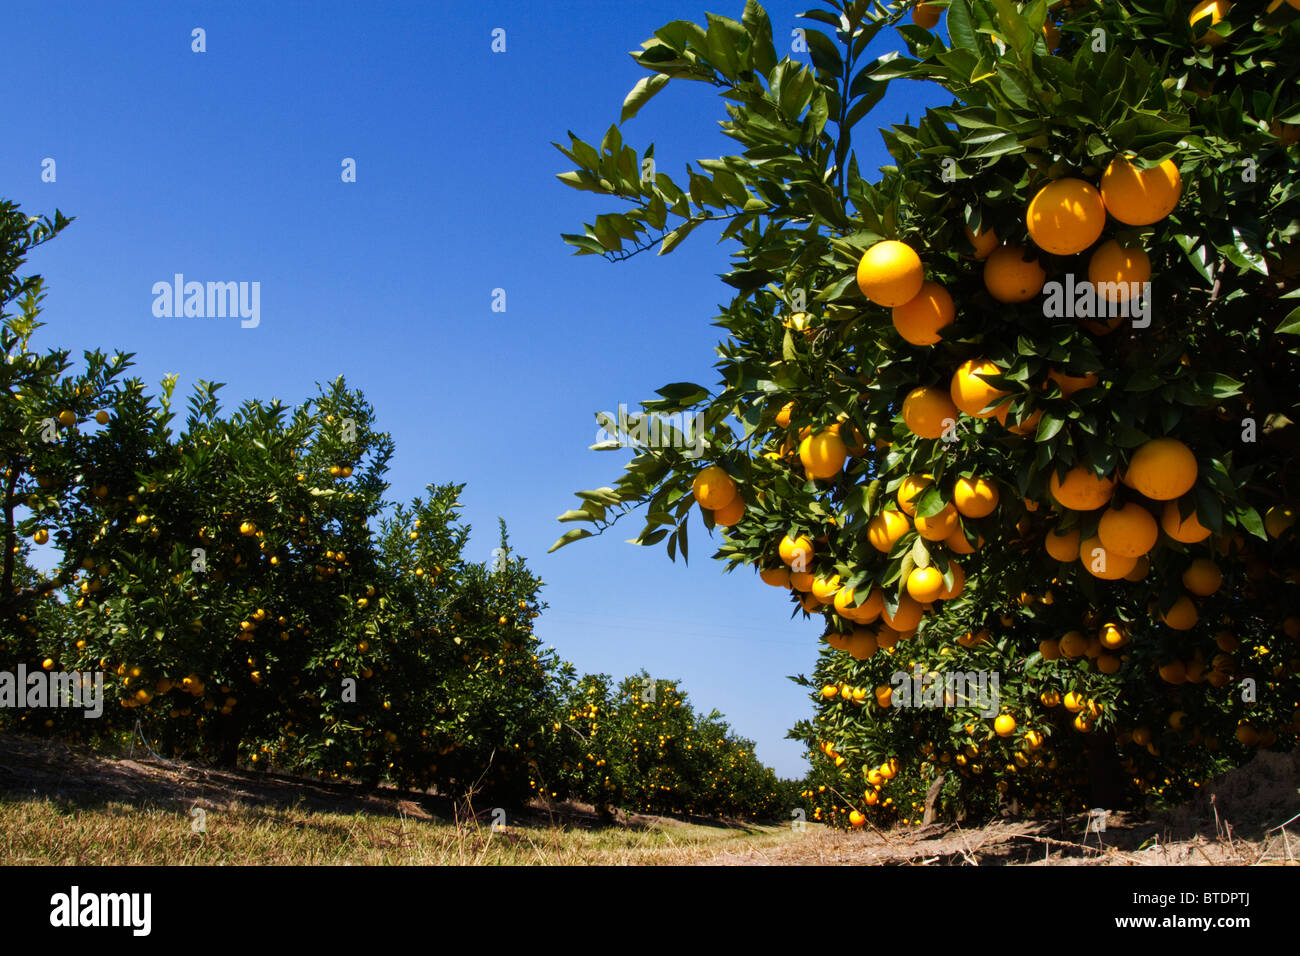 Los racimos de Naranjas (Citrus sinensis) colgando de los árboles en un huerto Foto de stock